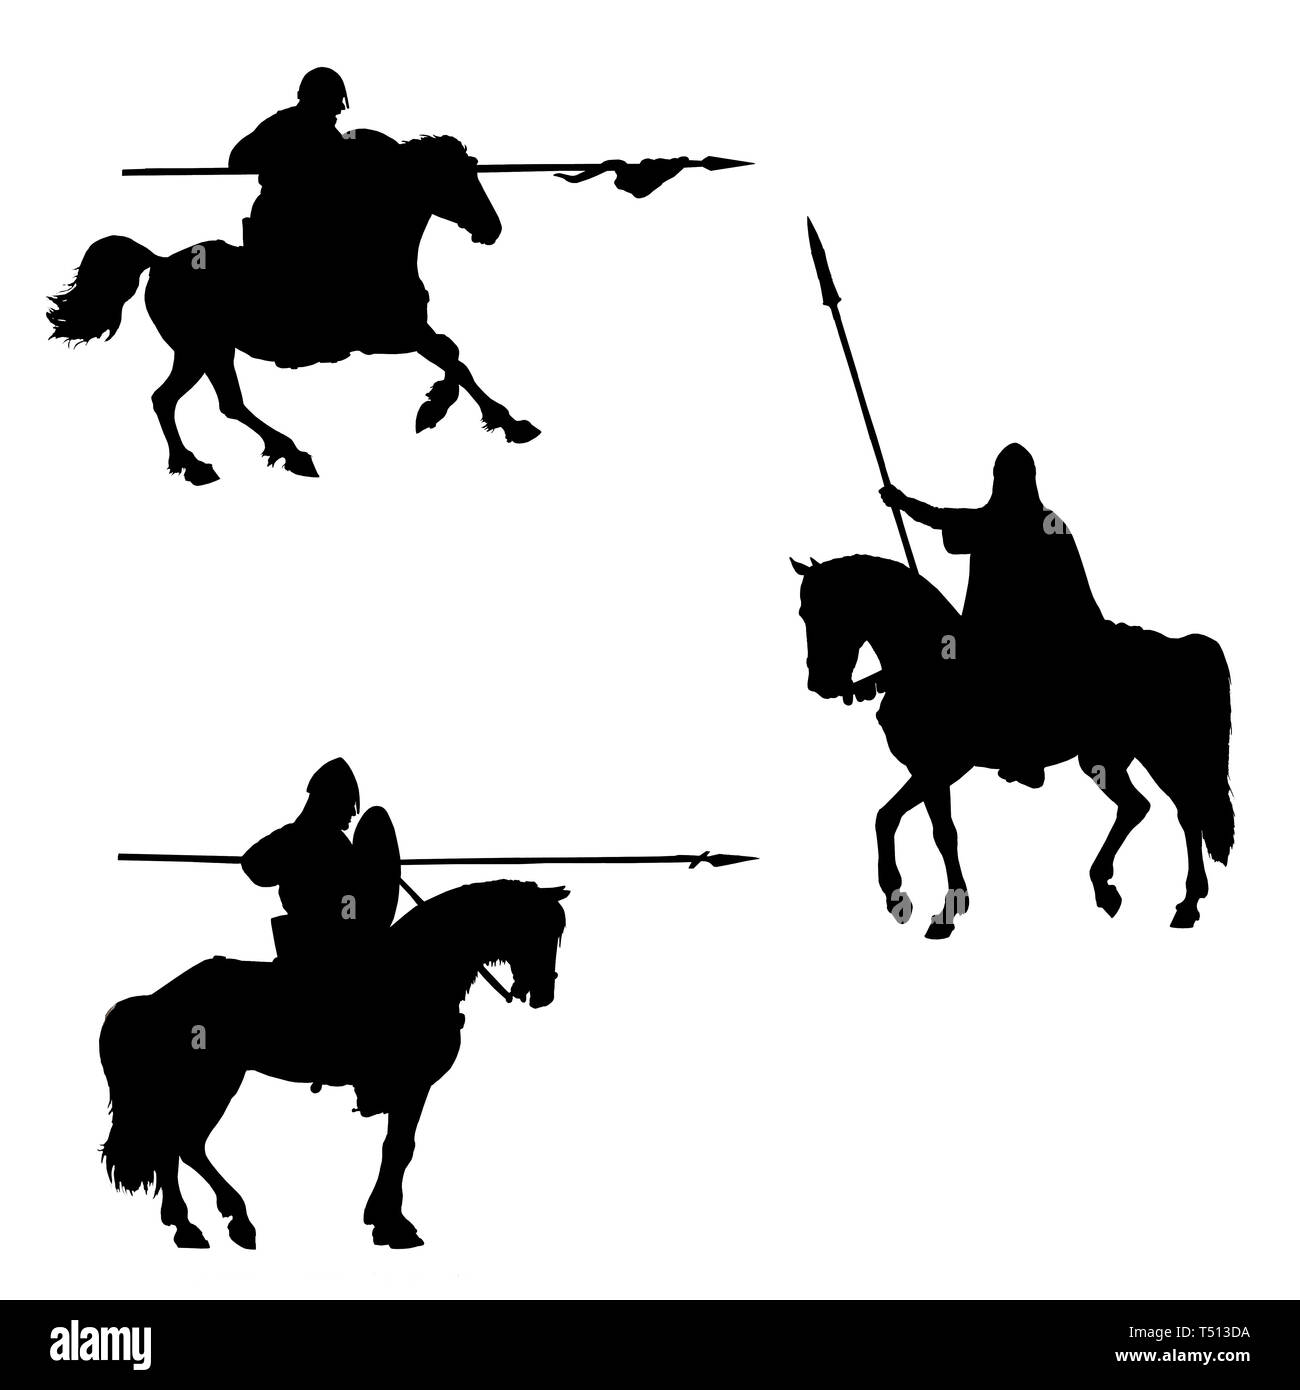 Mittelalterliche Ritter Abbildung montiert. Ritter zu Pferd. Satz von 3 mittelalterlichen Kreuzfahrer. Schwarz-weiß-Zeichnung. Ritter Silhouette. Stockfoto